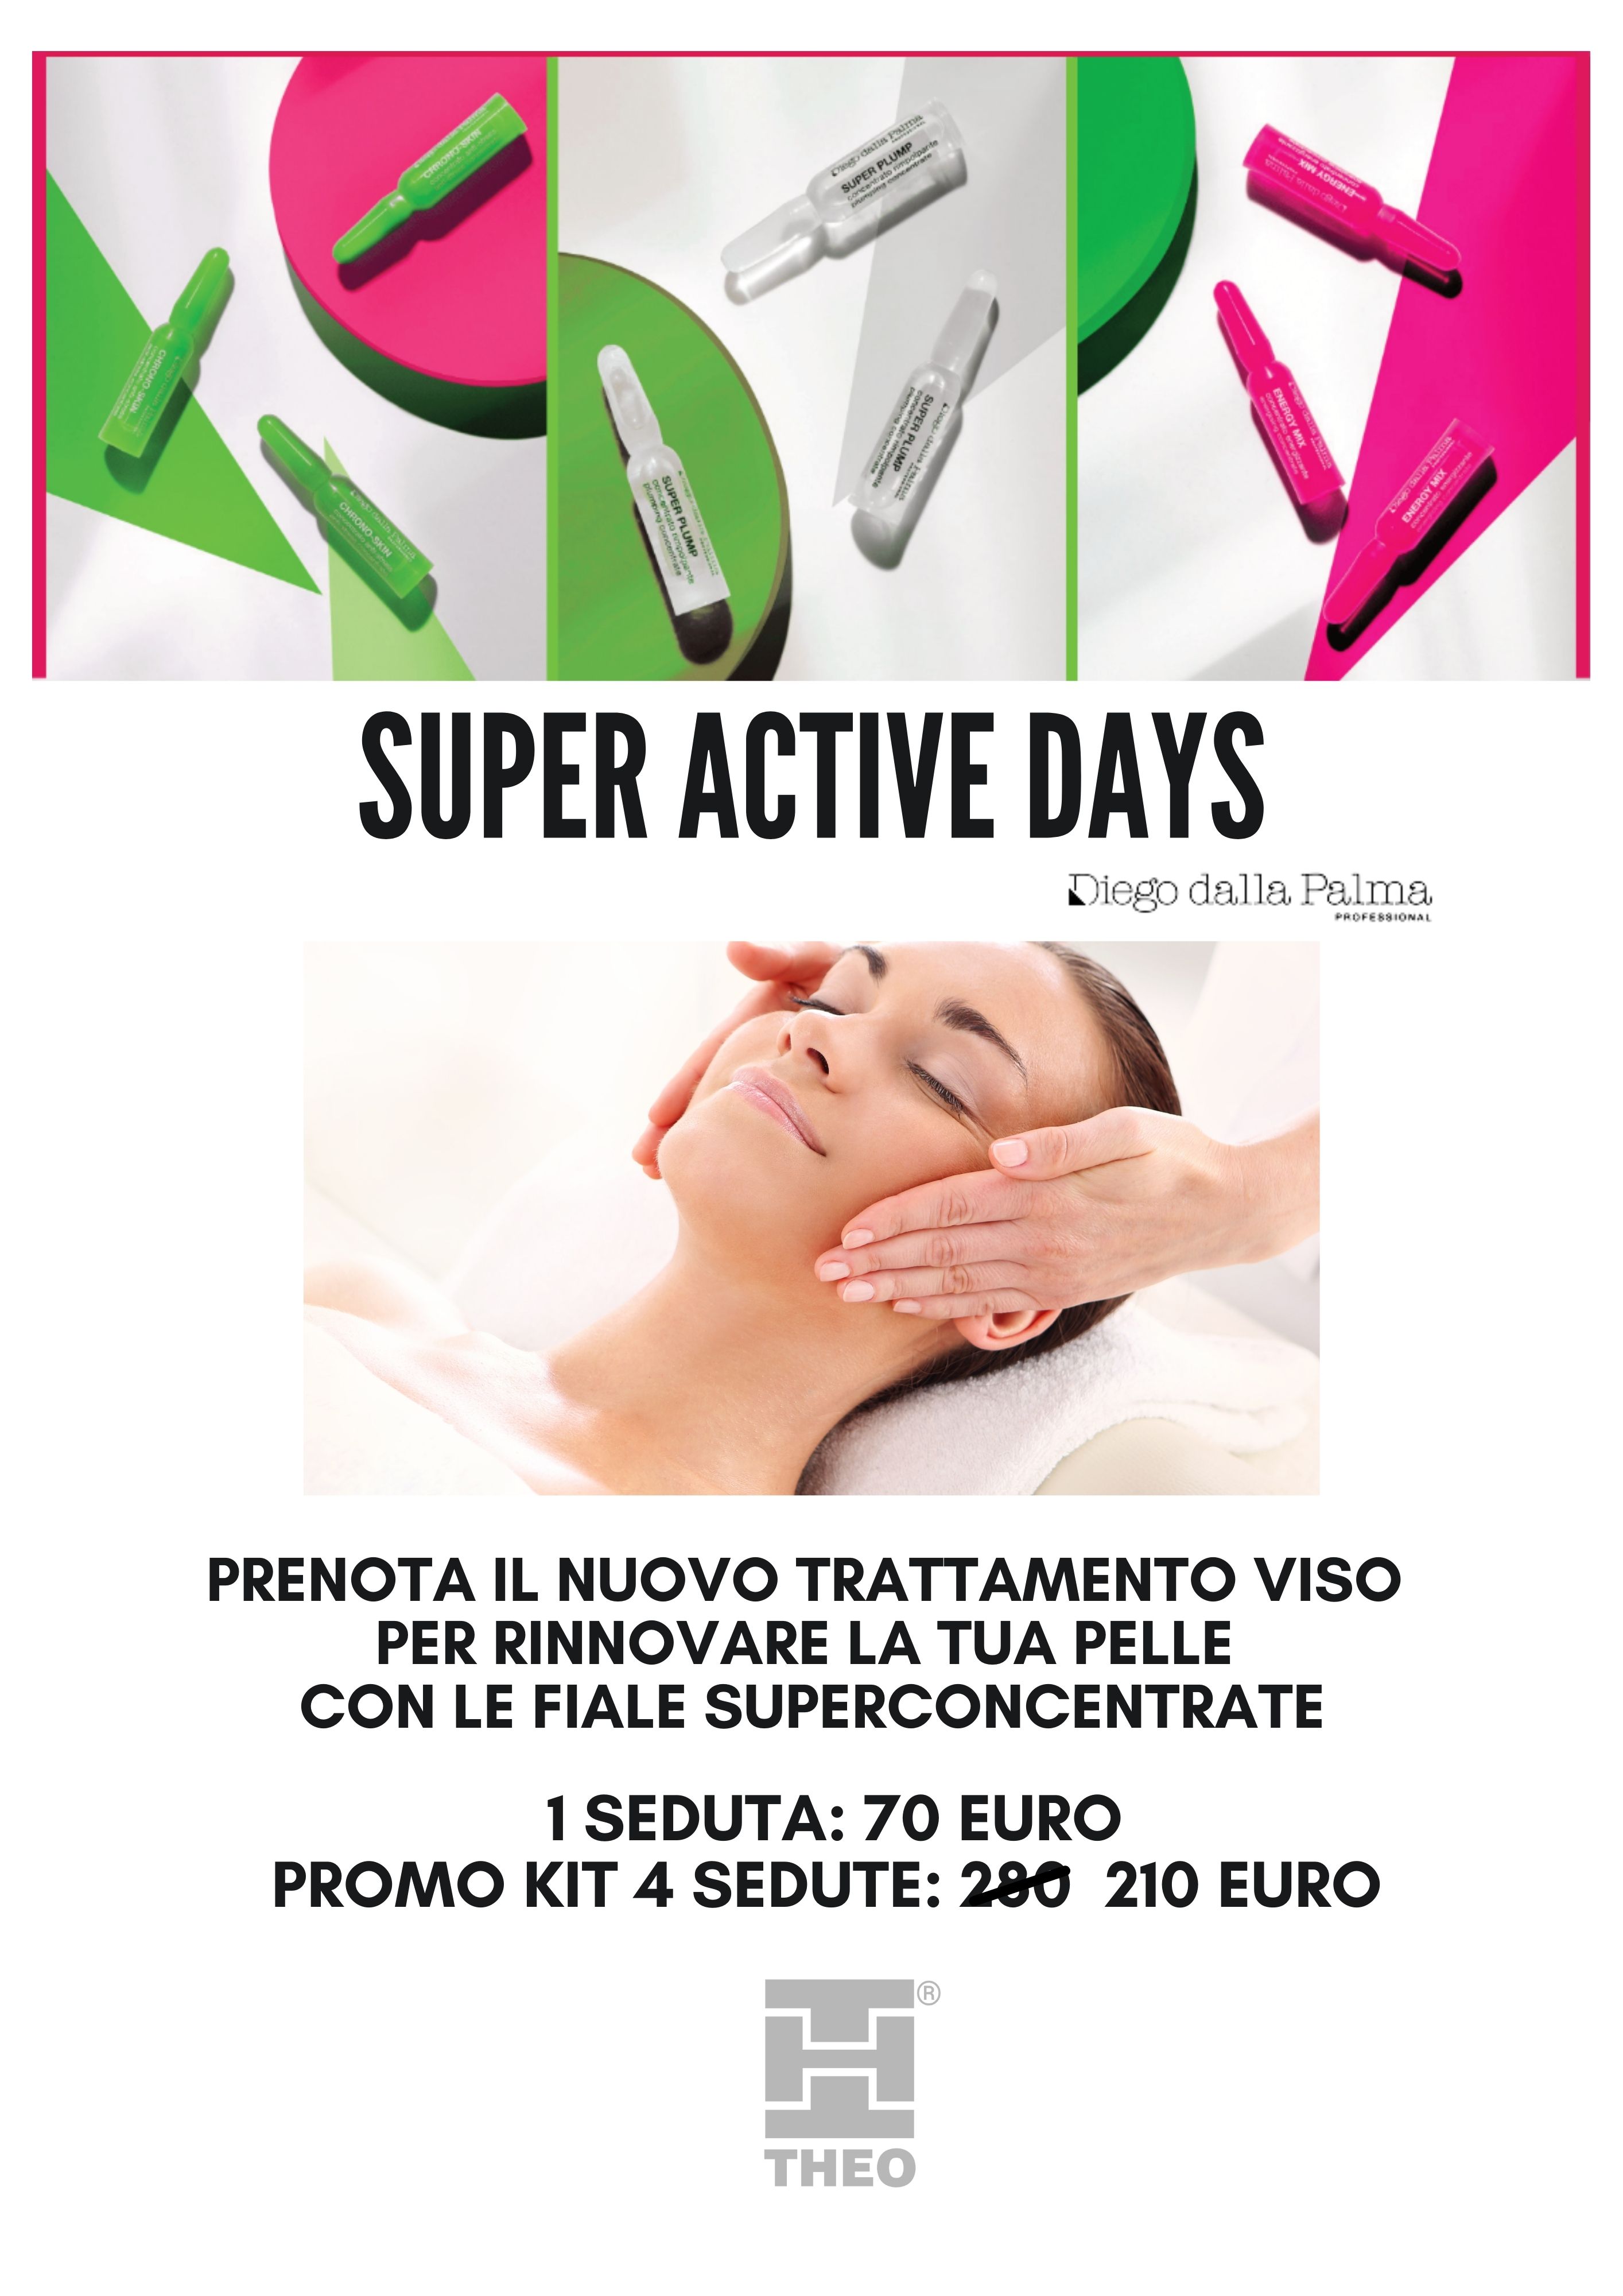 “Super Active Days” Diego dalla Palma Professional: promozione trattamento viso